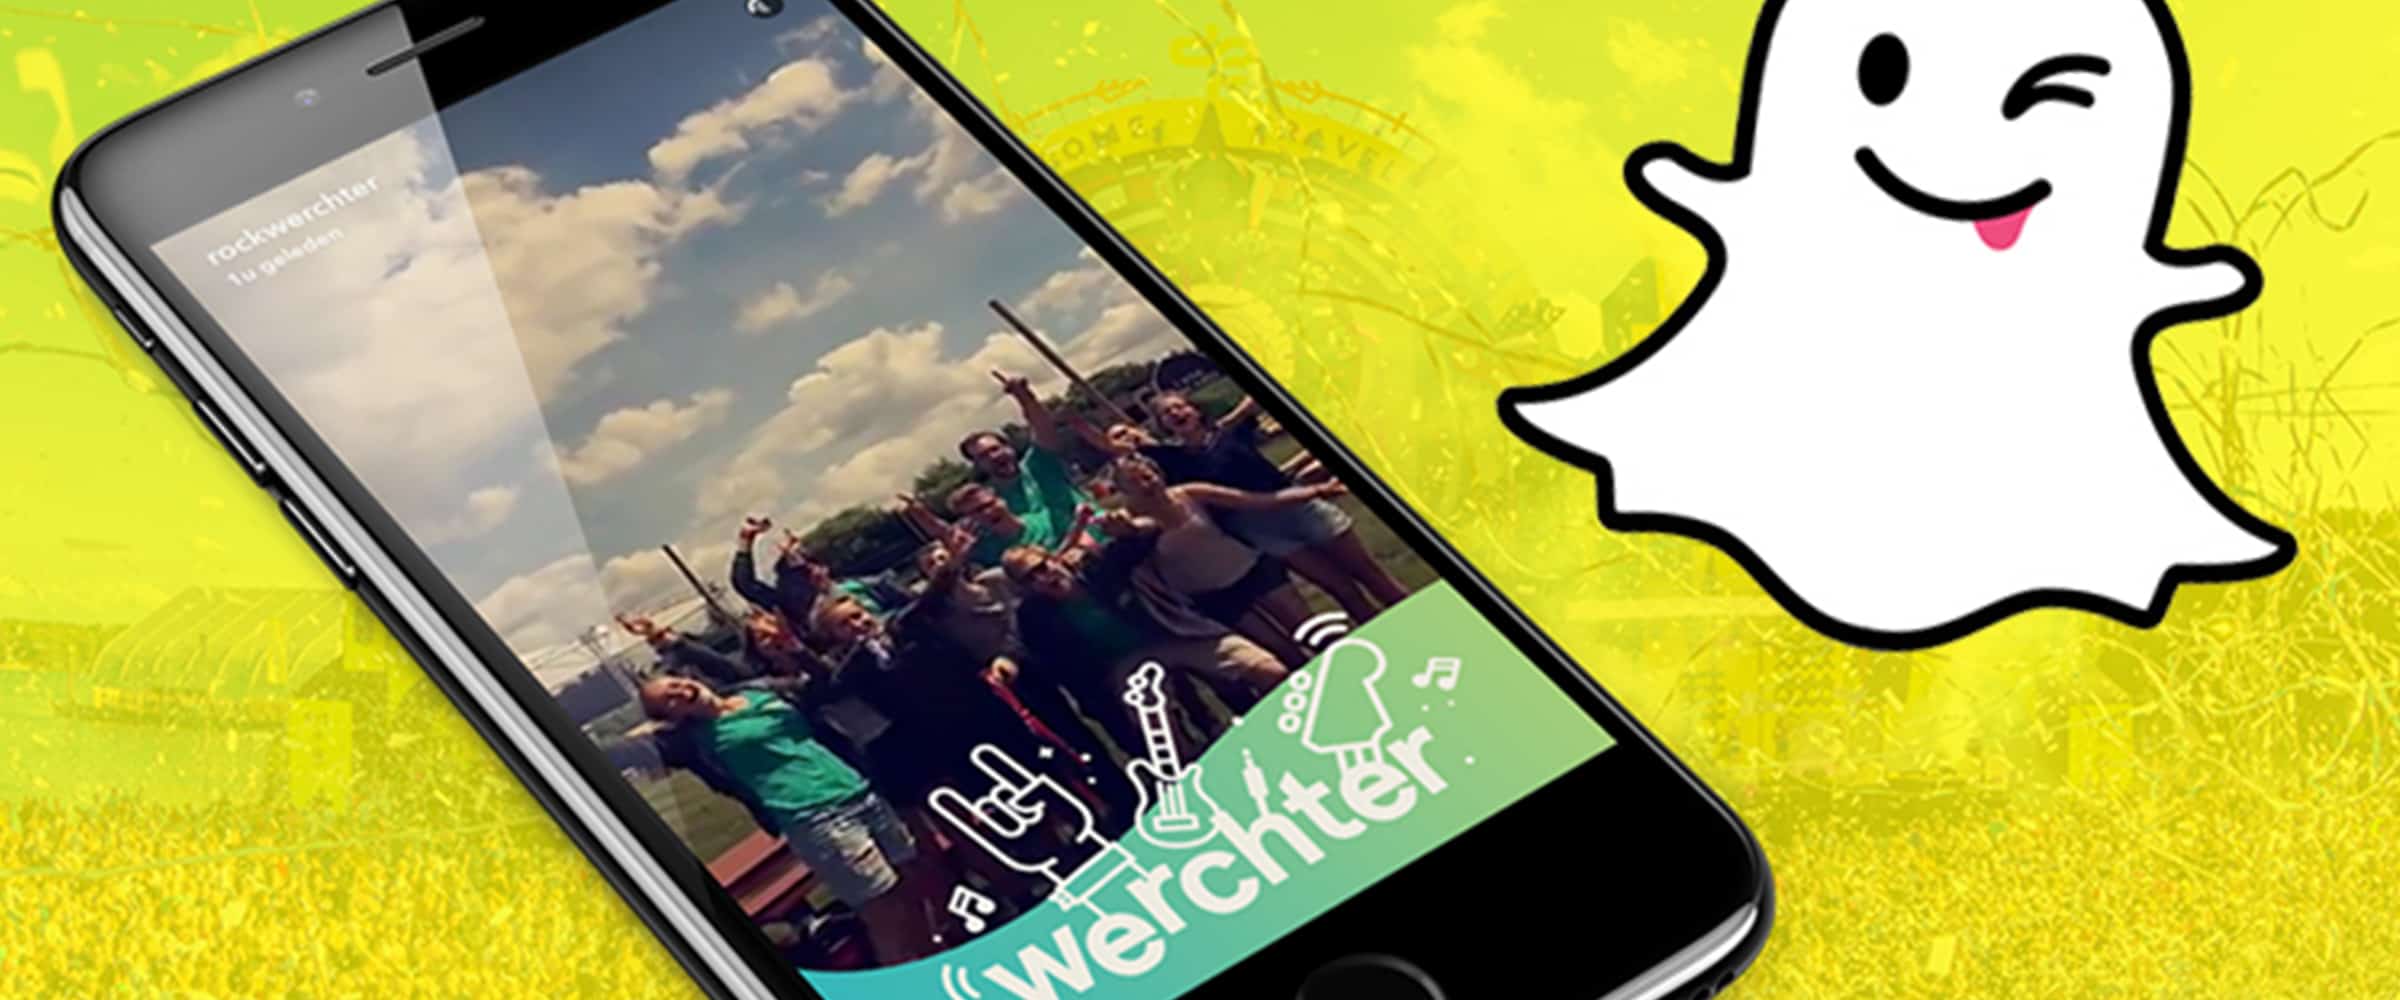 douche Lauw eenvoudig Snapchat Geofilter maken voor bedrijven en festivals | Start Moovin